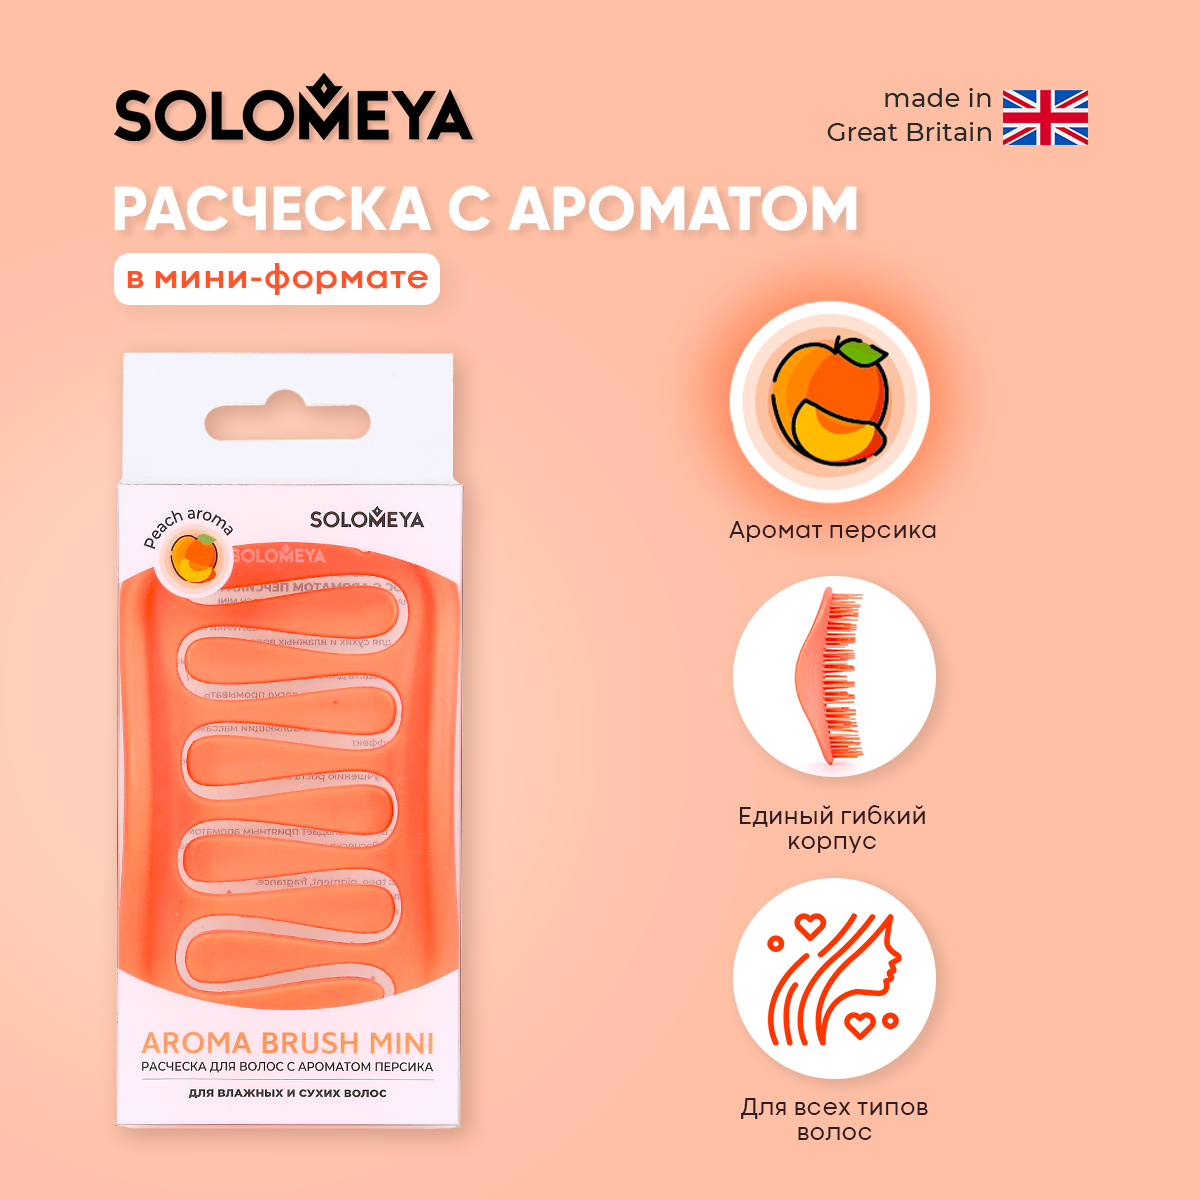 Расческа SOLOMEYA арома для сухих и влажных волос с ароматом Персика мини